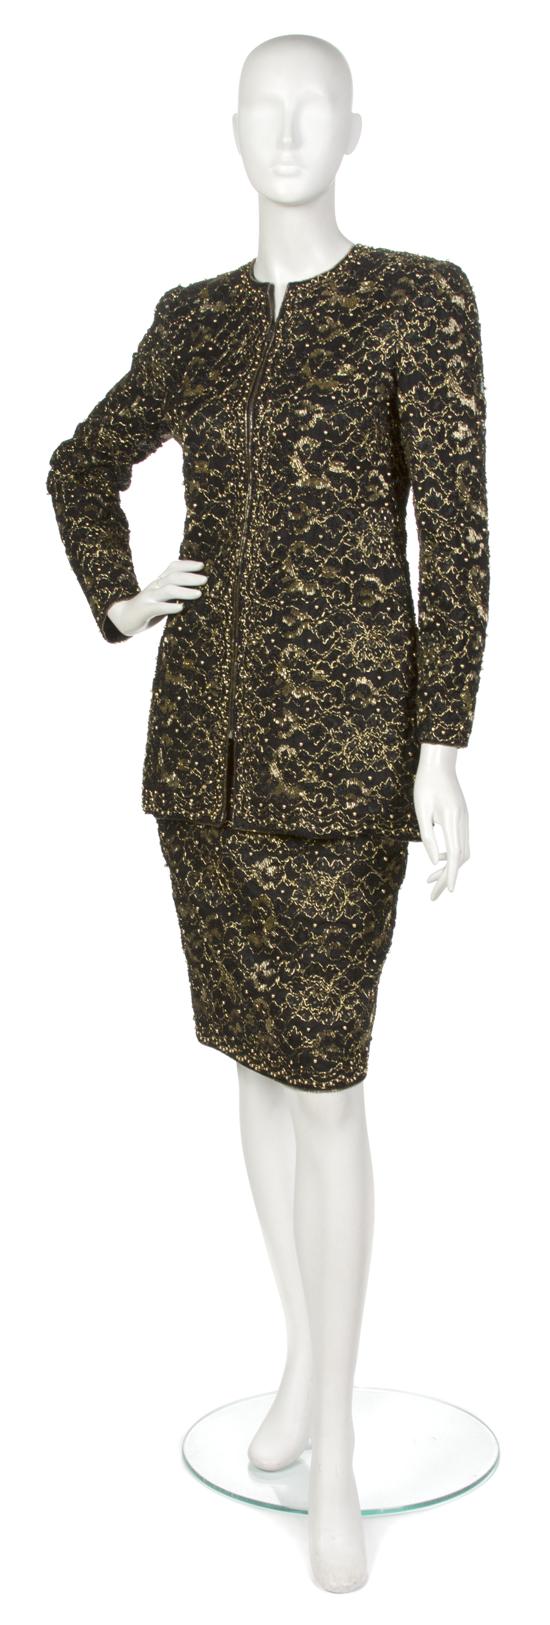 A Mary McFadden Black Lace Skirt 155a55